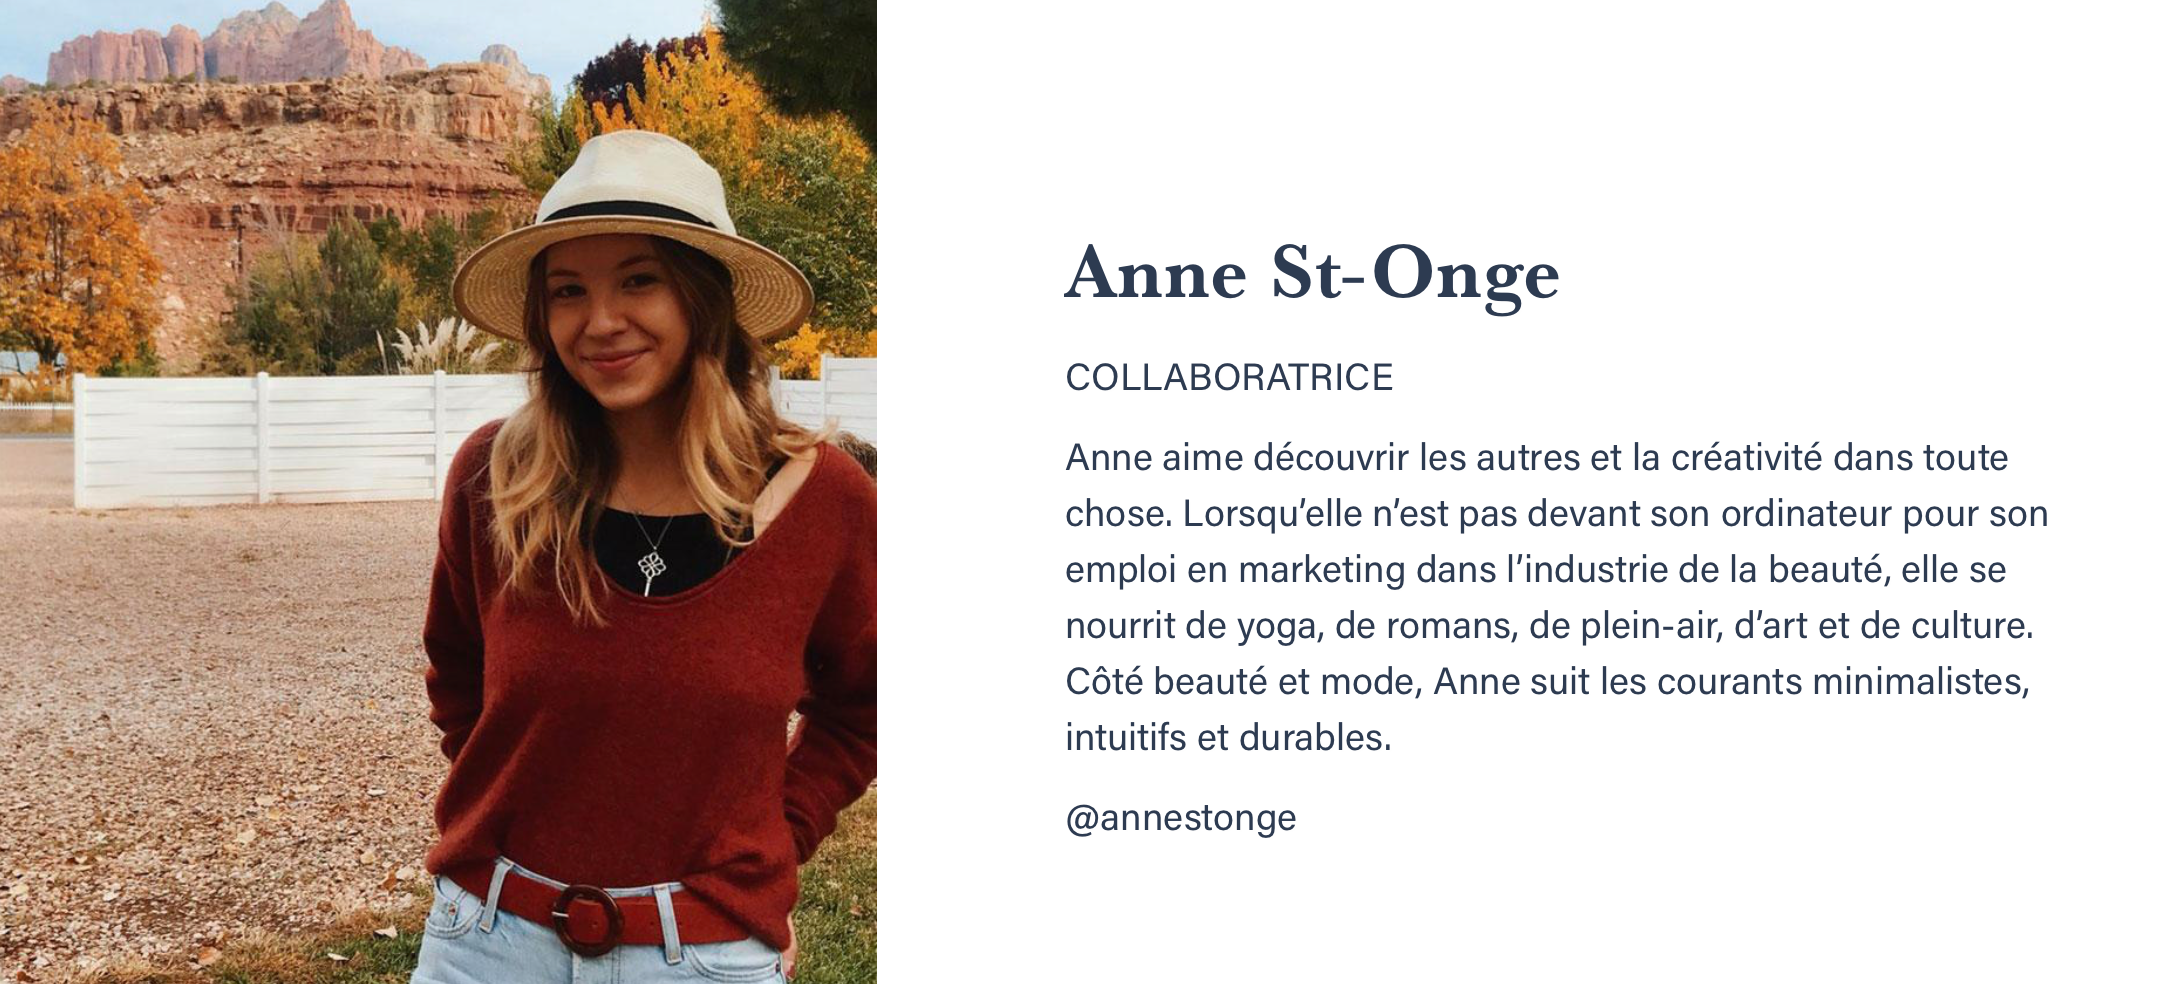 Anne St-Onge